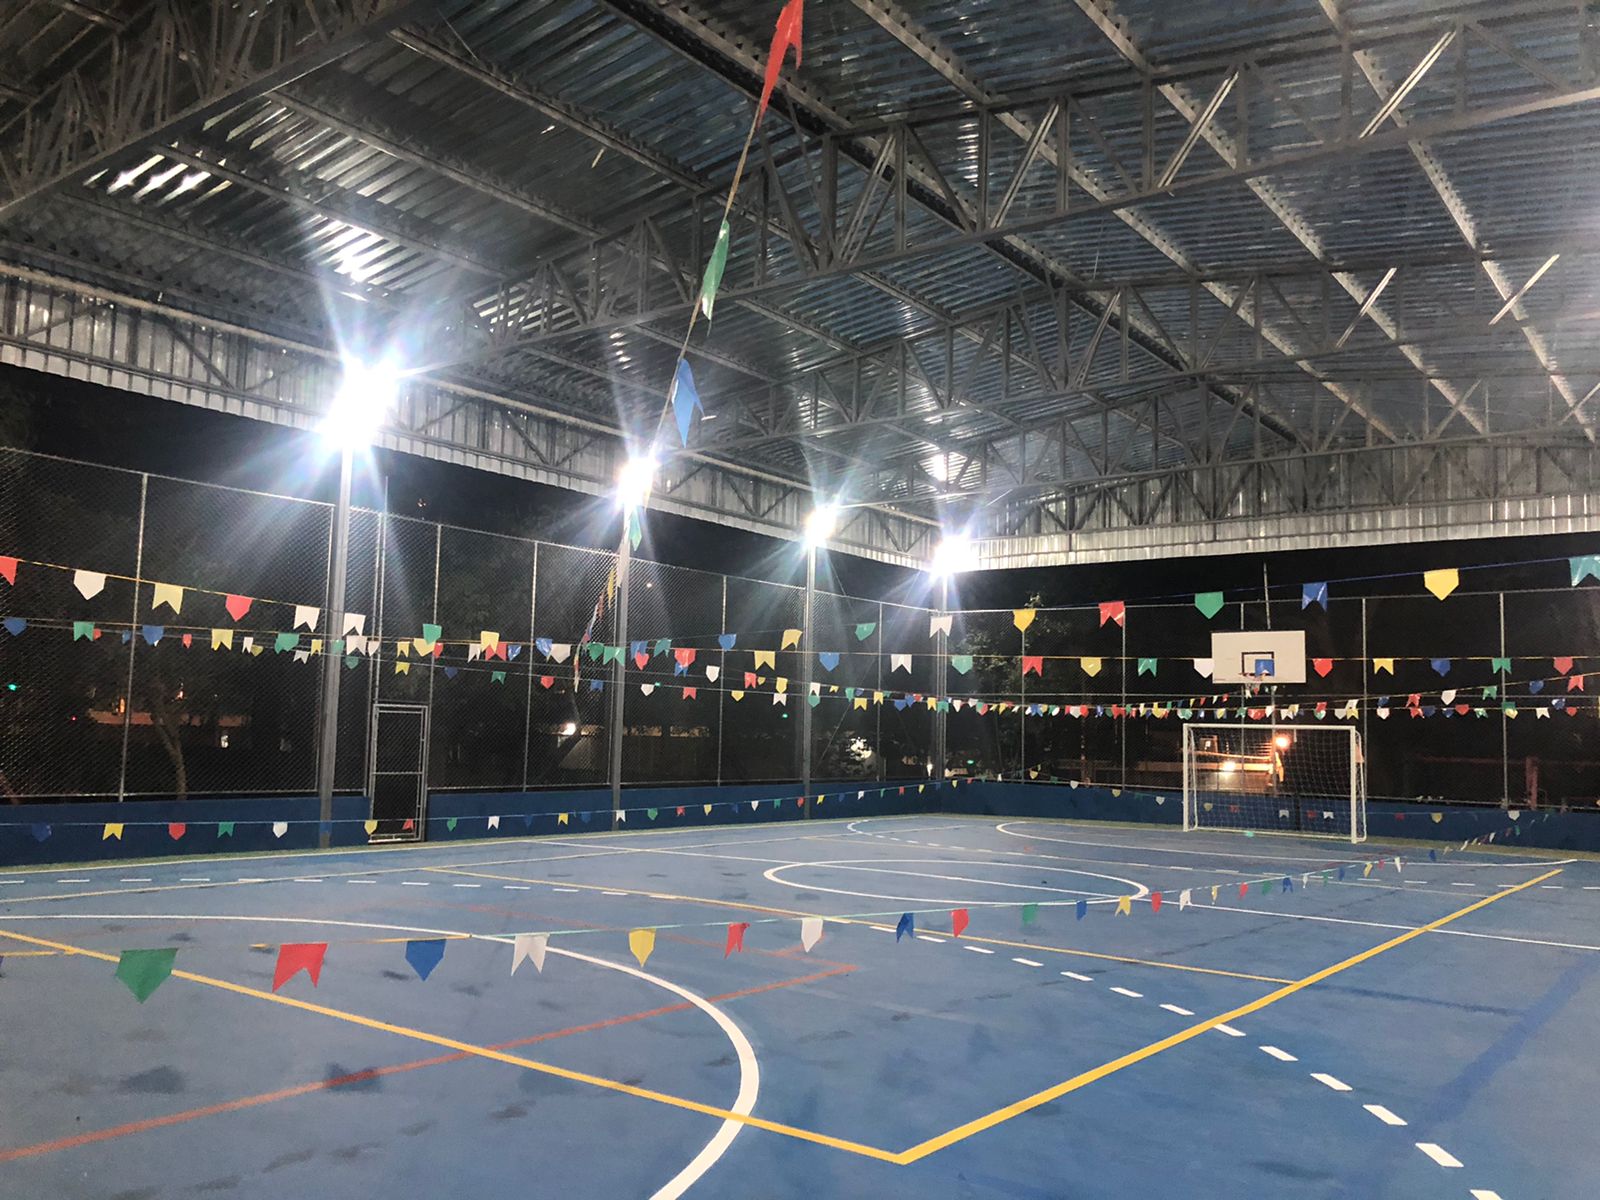 Fotografia de uma quadra poliesportiva coberta, enfeitada com bandeirinhas coloridas. É noite e iluminação está ligada.